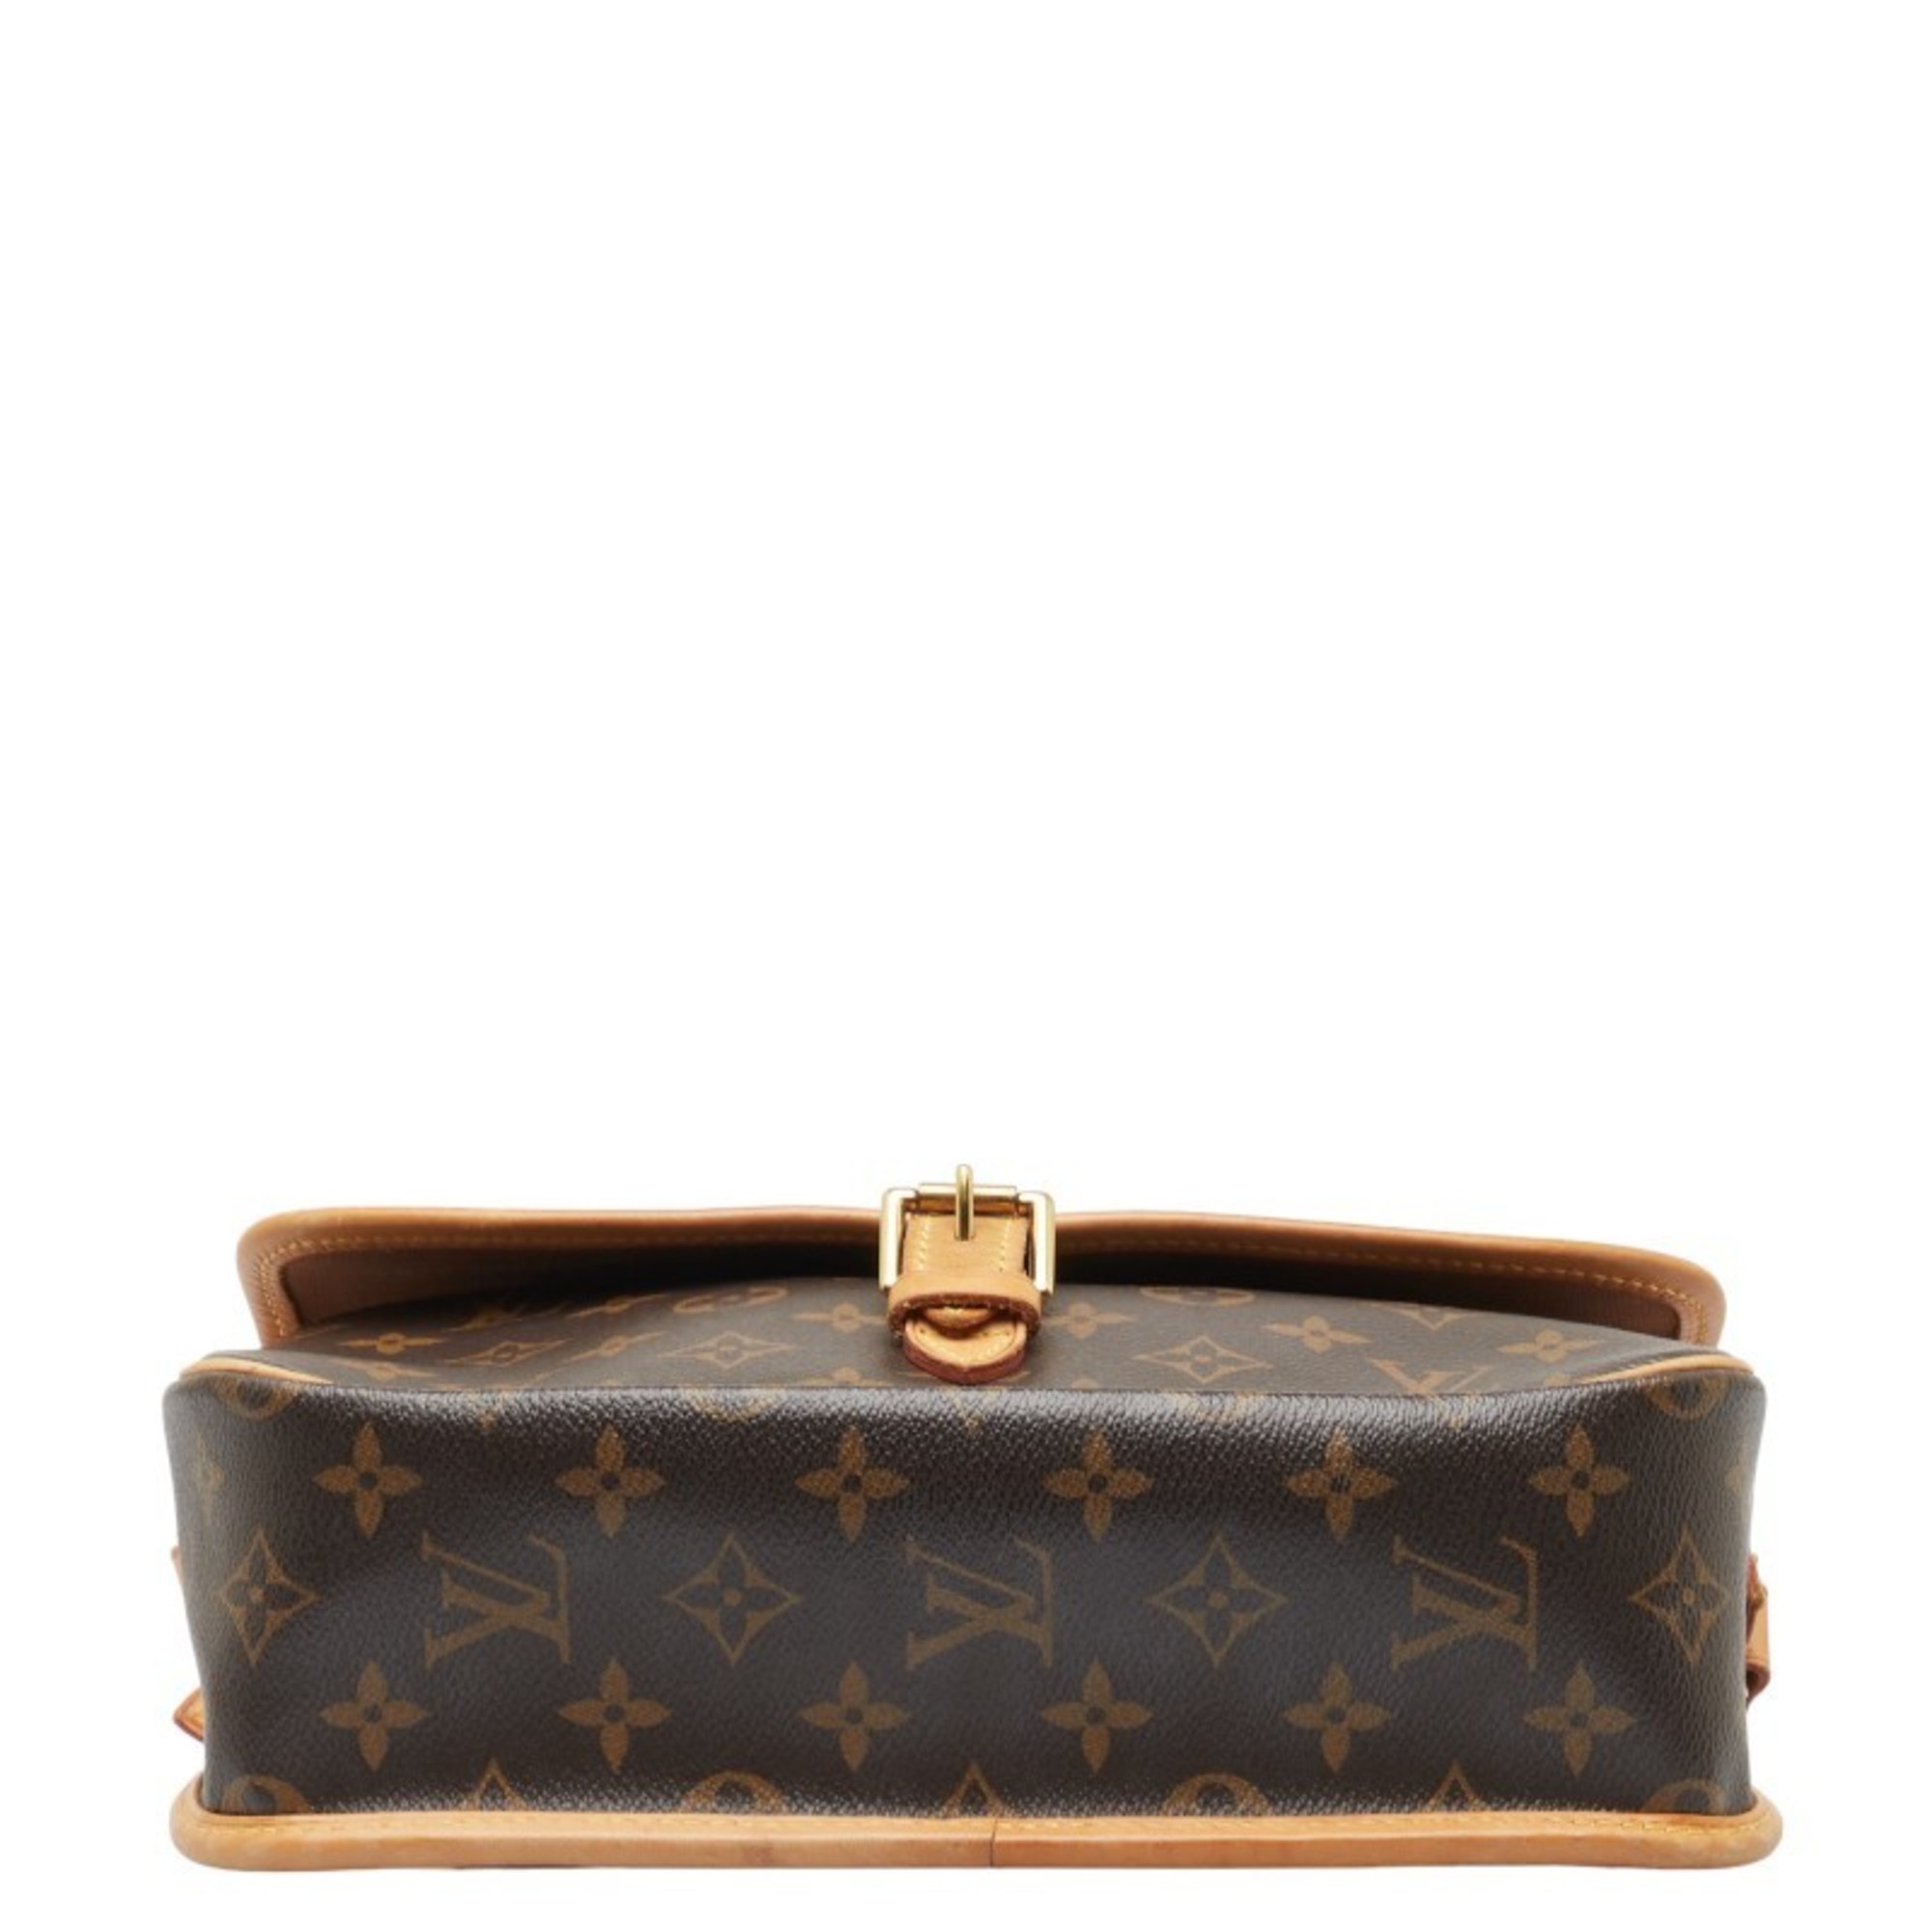 Louis Vuitton Monogram Sologne Shoulder Bag M42250 Brown PVC Leather Women's LOUIS VUITTON